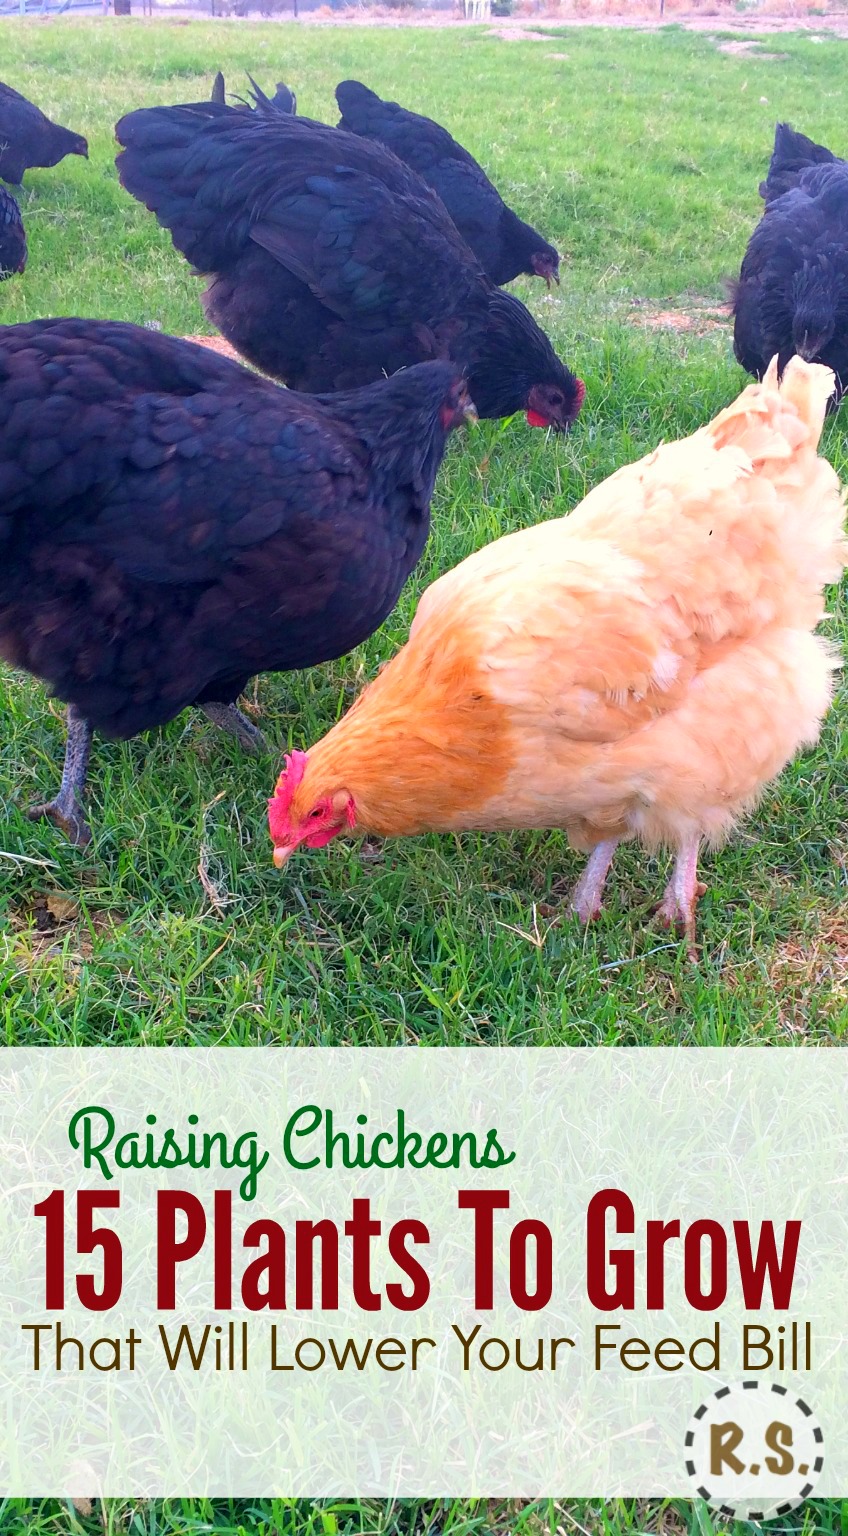  Bauen Sie Ihr Hühnerfutter im Garten in einem mehrjährigen Permakultur-Garten an. Kostenloser Futterschatten für die Hühner in der essbaren Landschaft direkt vor ihrem Stall. Wenn Sie Hühnerfutter anbauen, sparen Sie Geld.